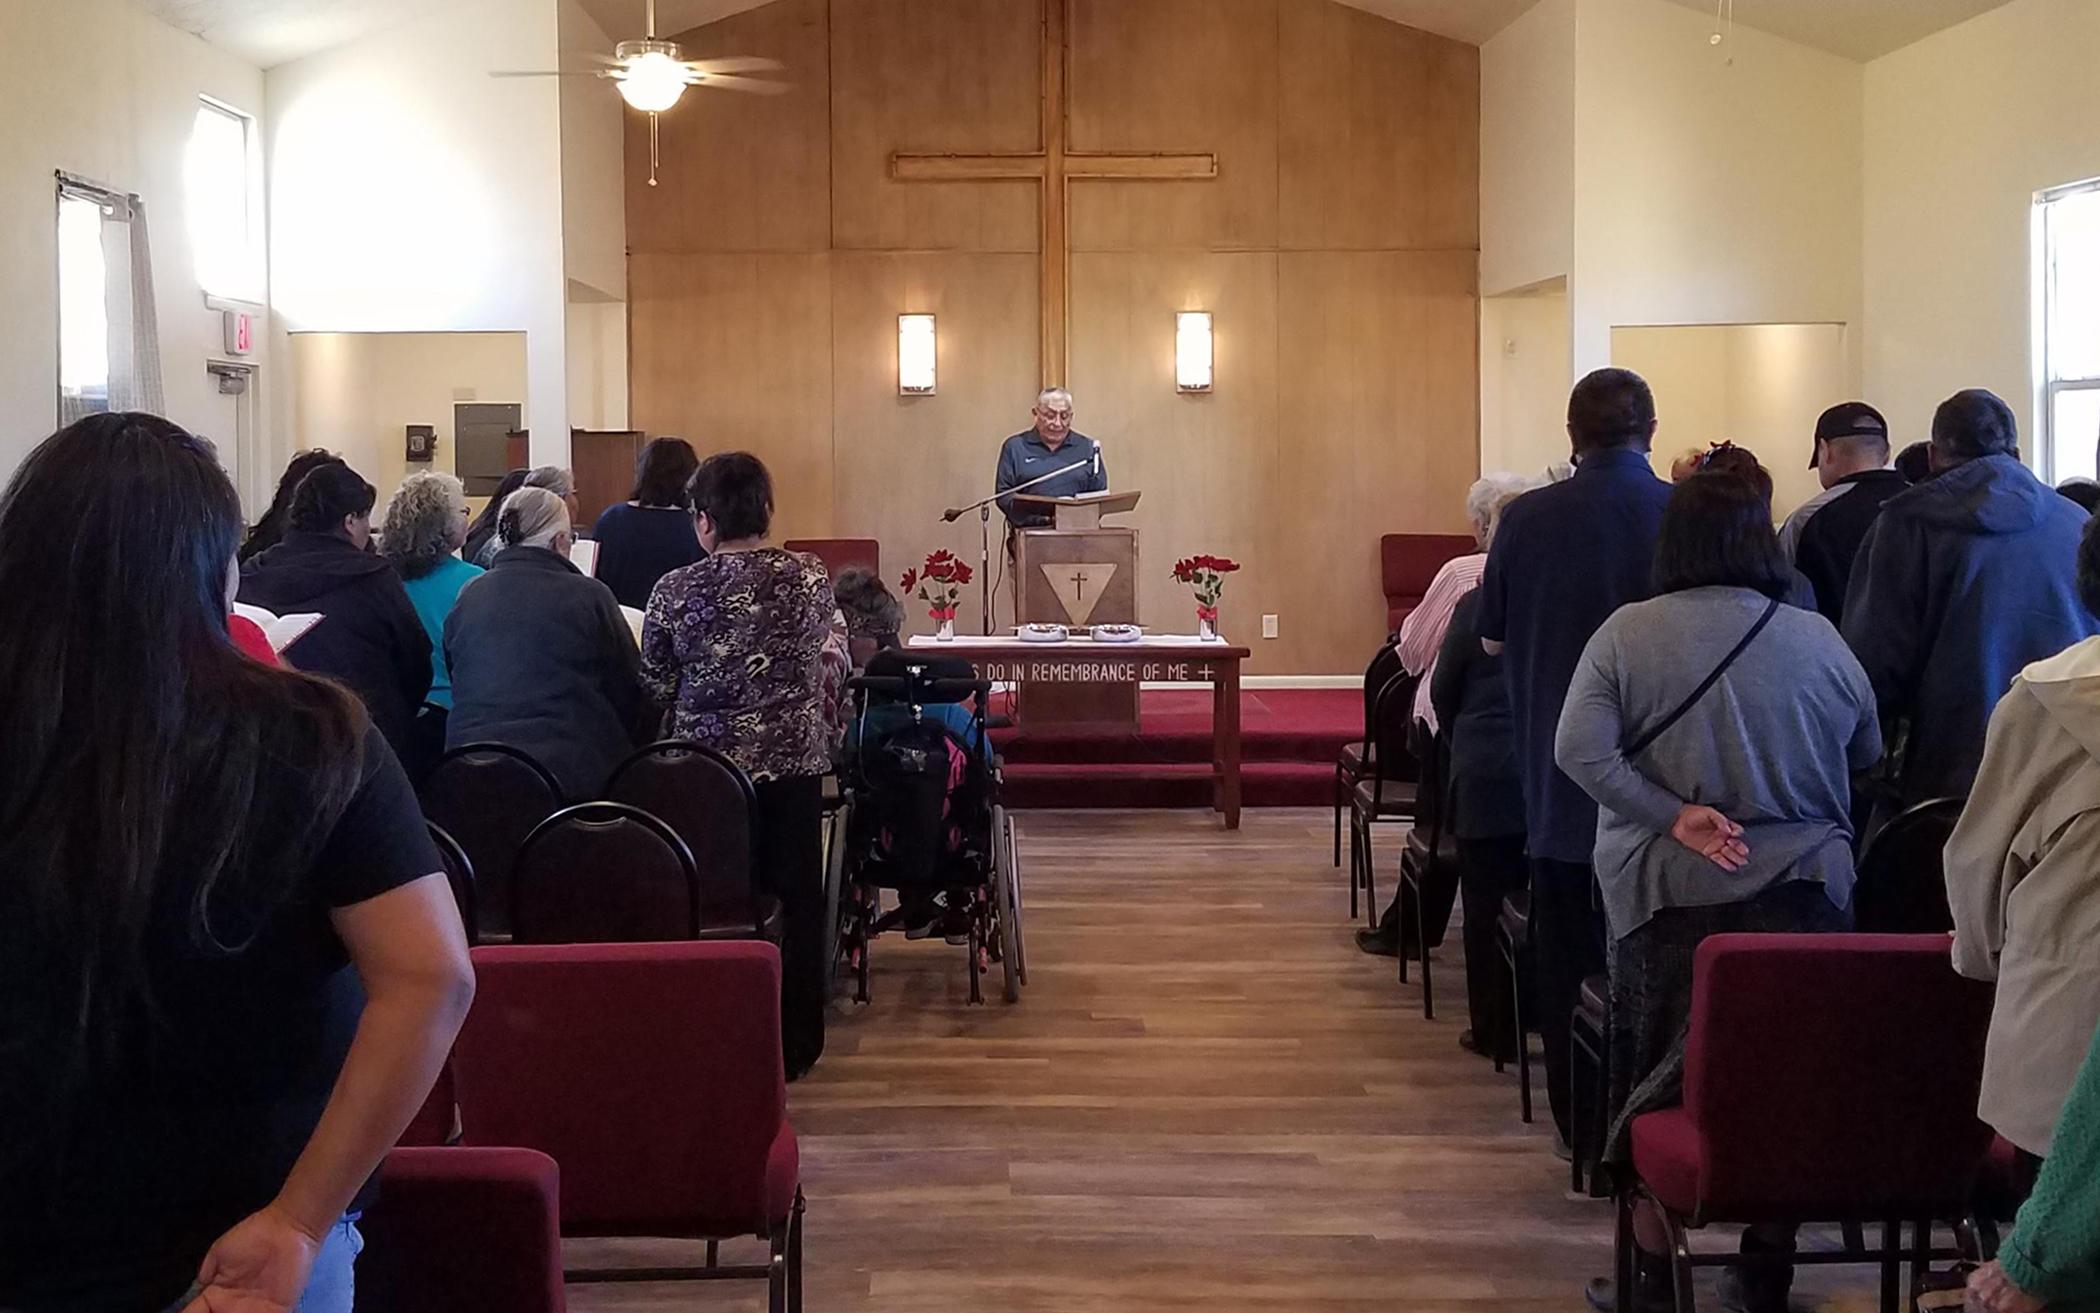 Naschitti CRC Returns to Worship in Restored Sanctuary